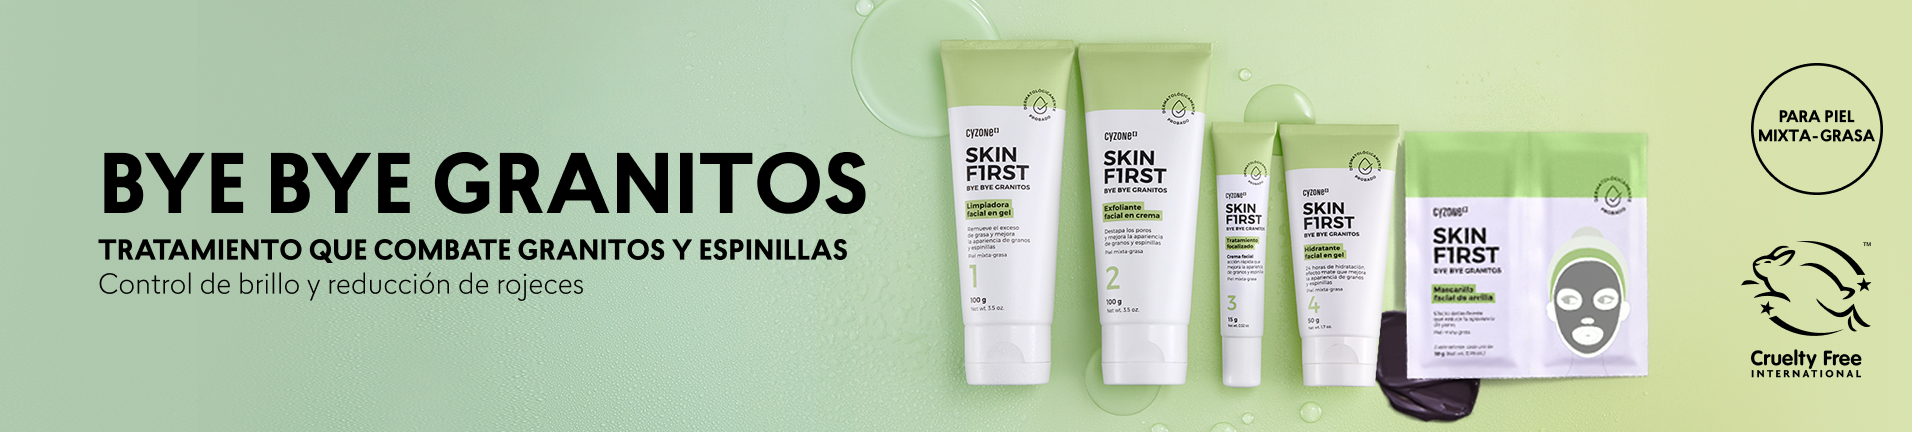 Productos para el cuidado de la piel para piel grasa y con acne en la cara, productos para reducir el acne y espinillas con la línea bye bye granitos de skin first cyzone